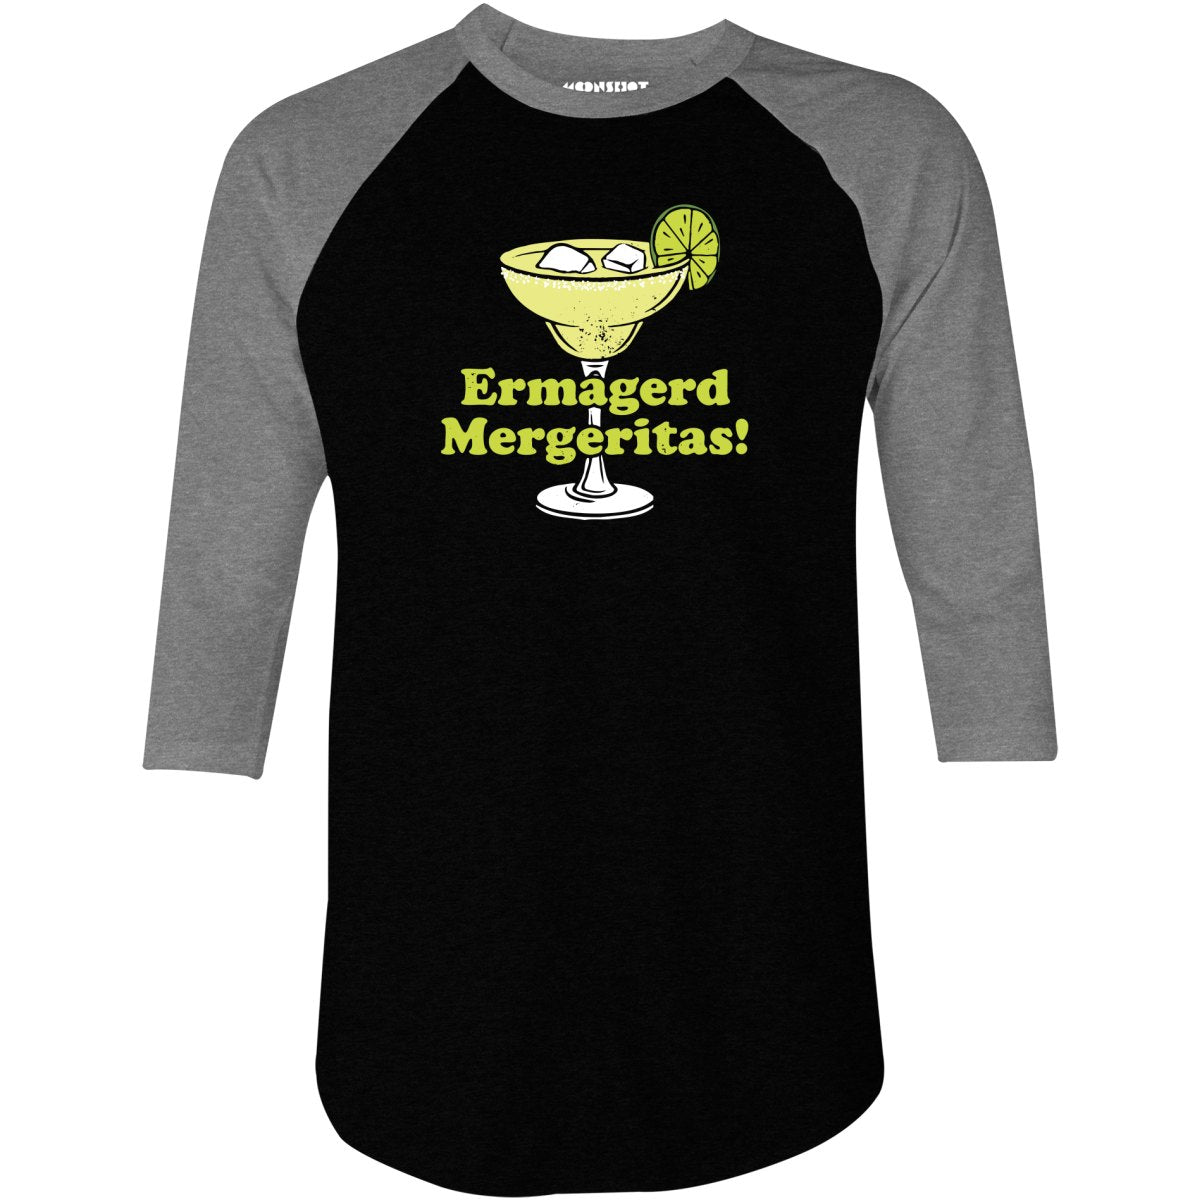 Ermagerd Mergeritas! - 3/4 Sleeve Raglan T-Shirt